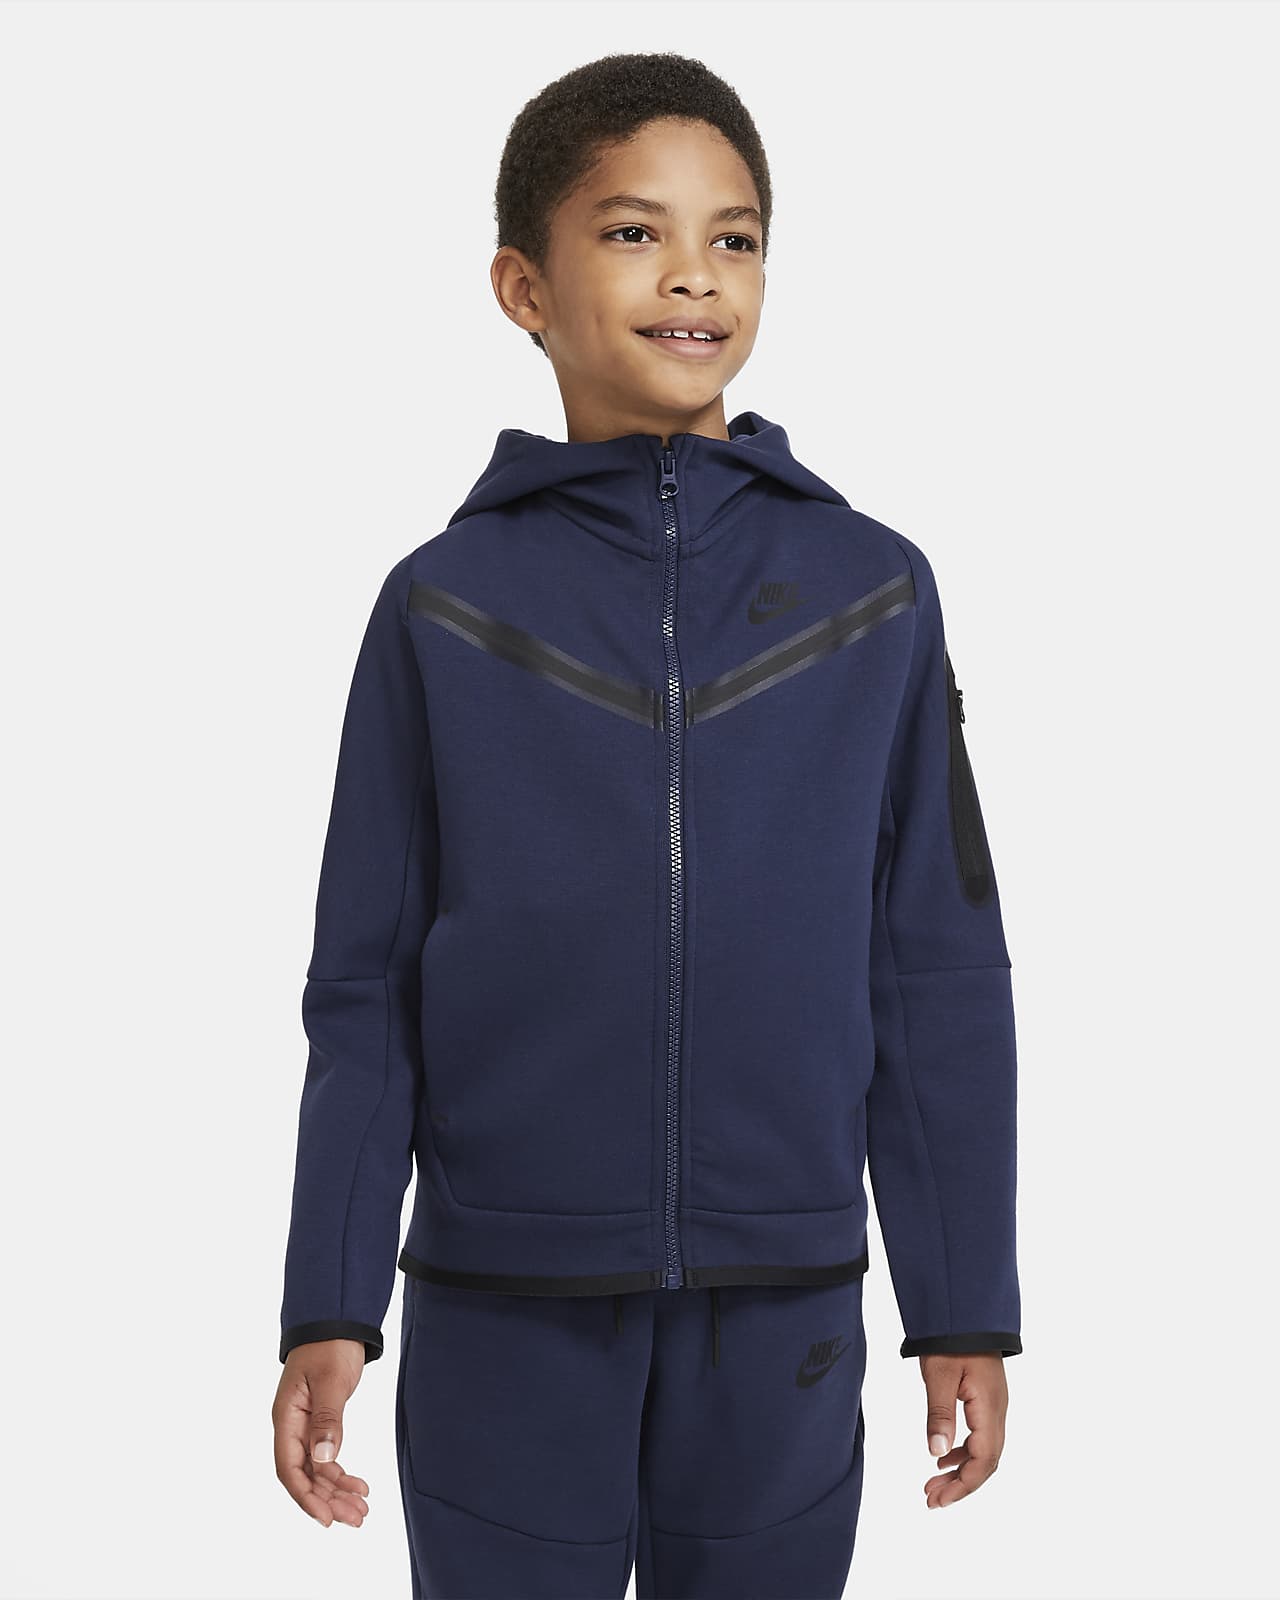 Nike Sportswear Tech Fleece Hoodie mit durchgehendem Reißverschluss für ältere Kinder (Jungen)